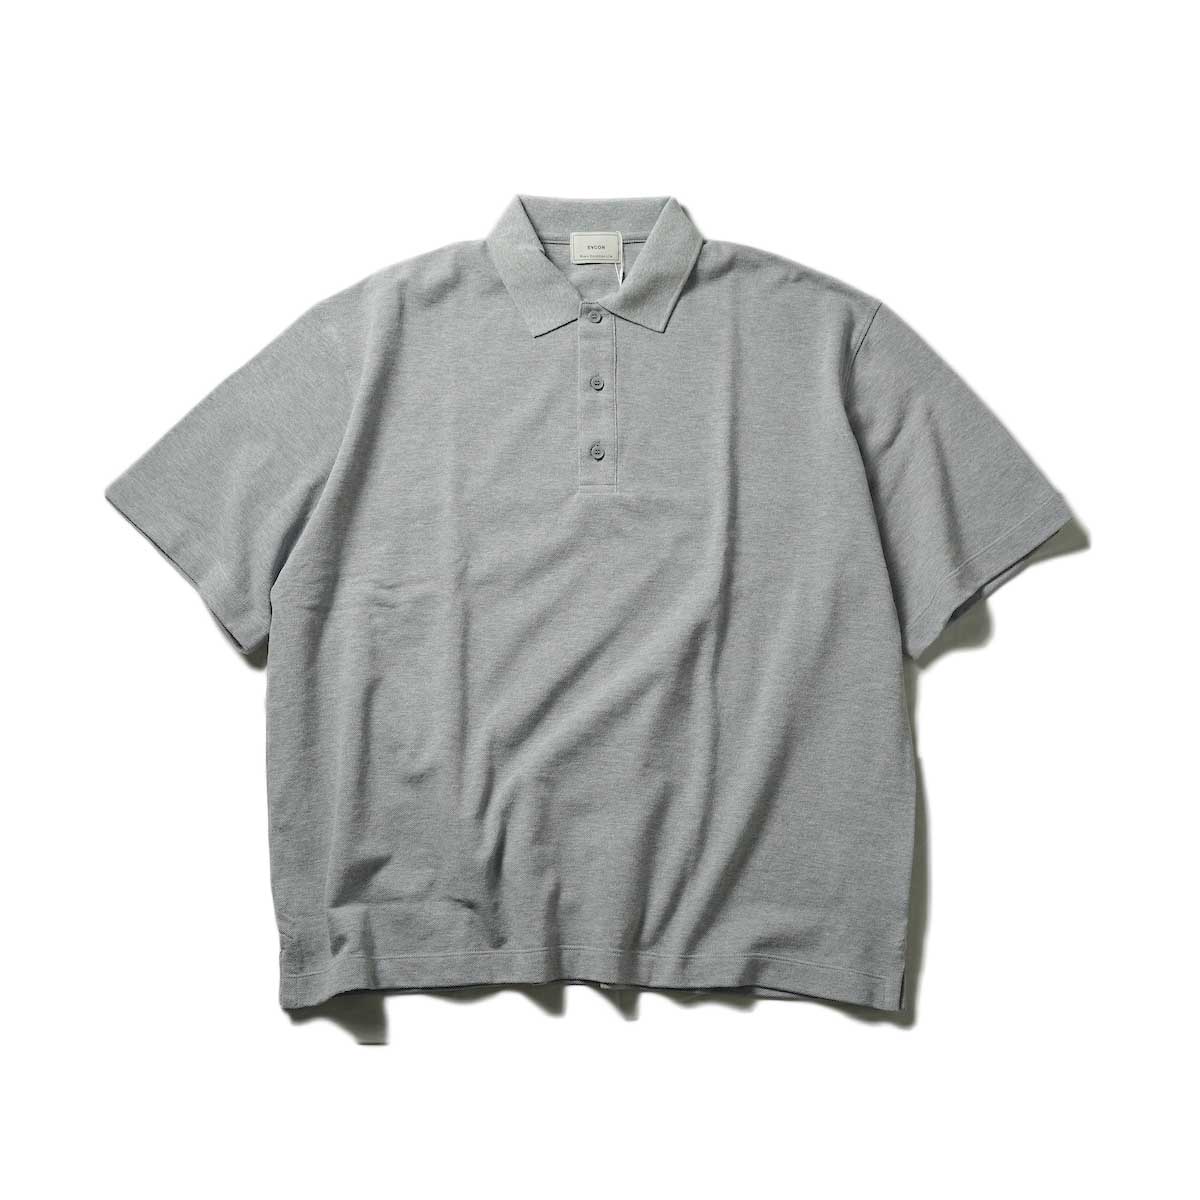 EVCON / Piquet Polo Shirt (Gray)